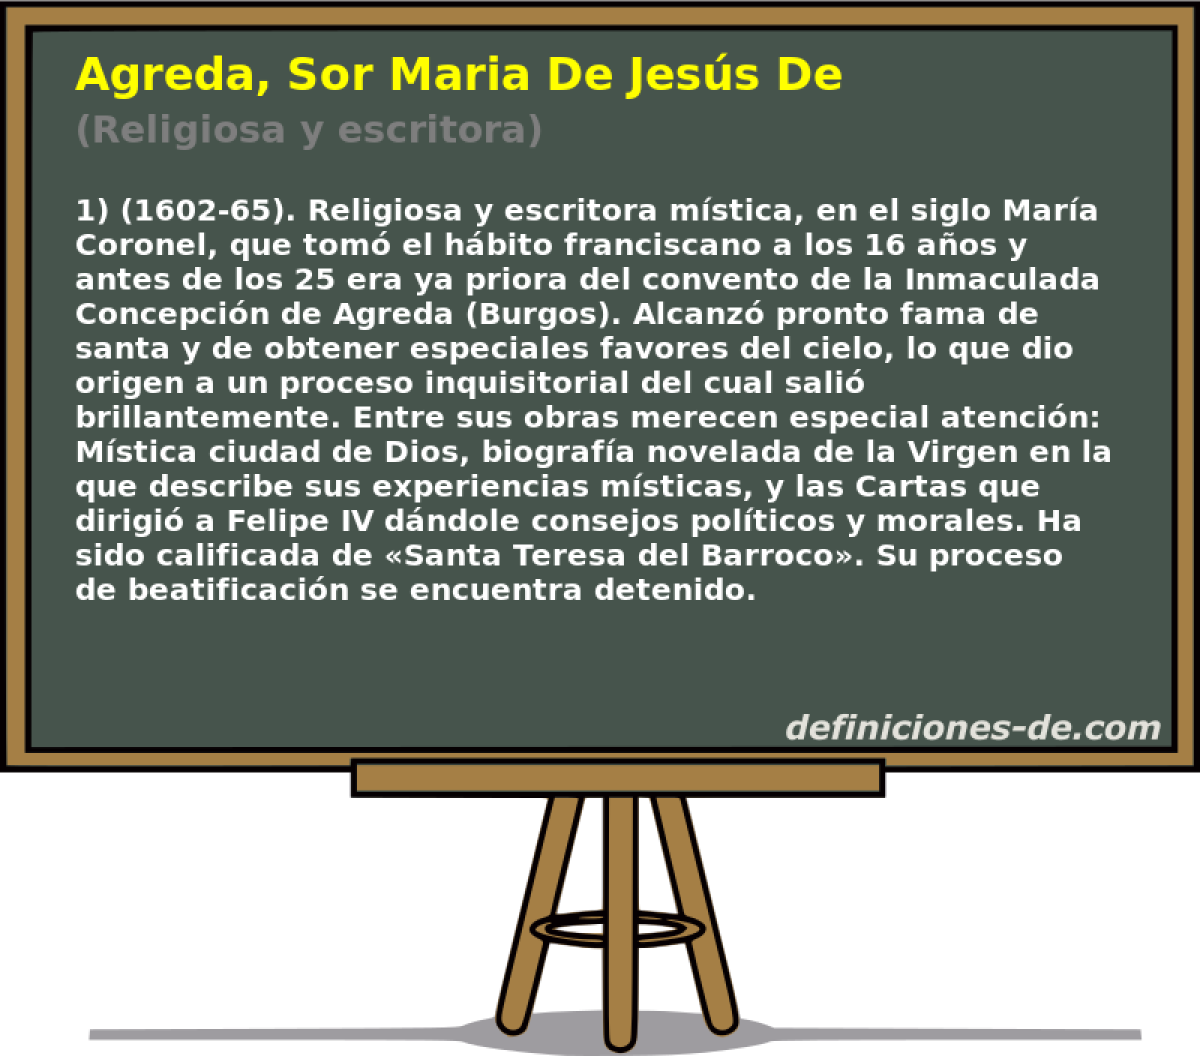 Agreda, Sor Maria De Jess De (Religiosa y escritora)